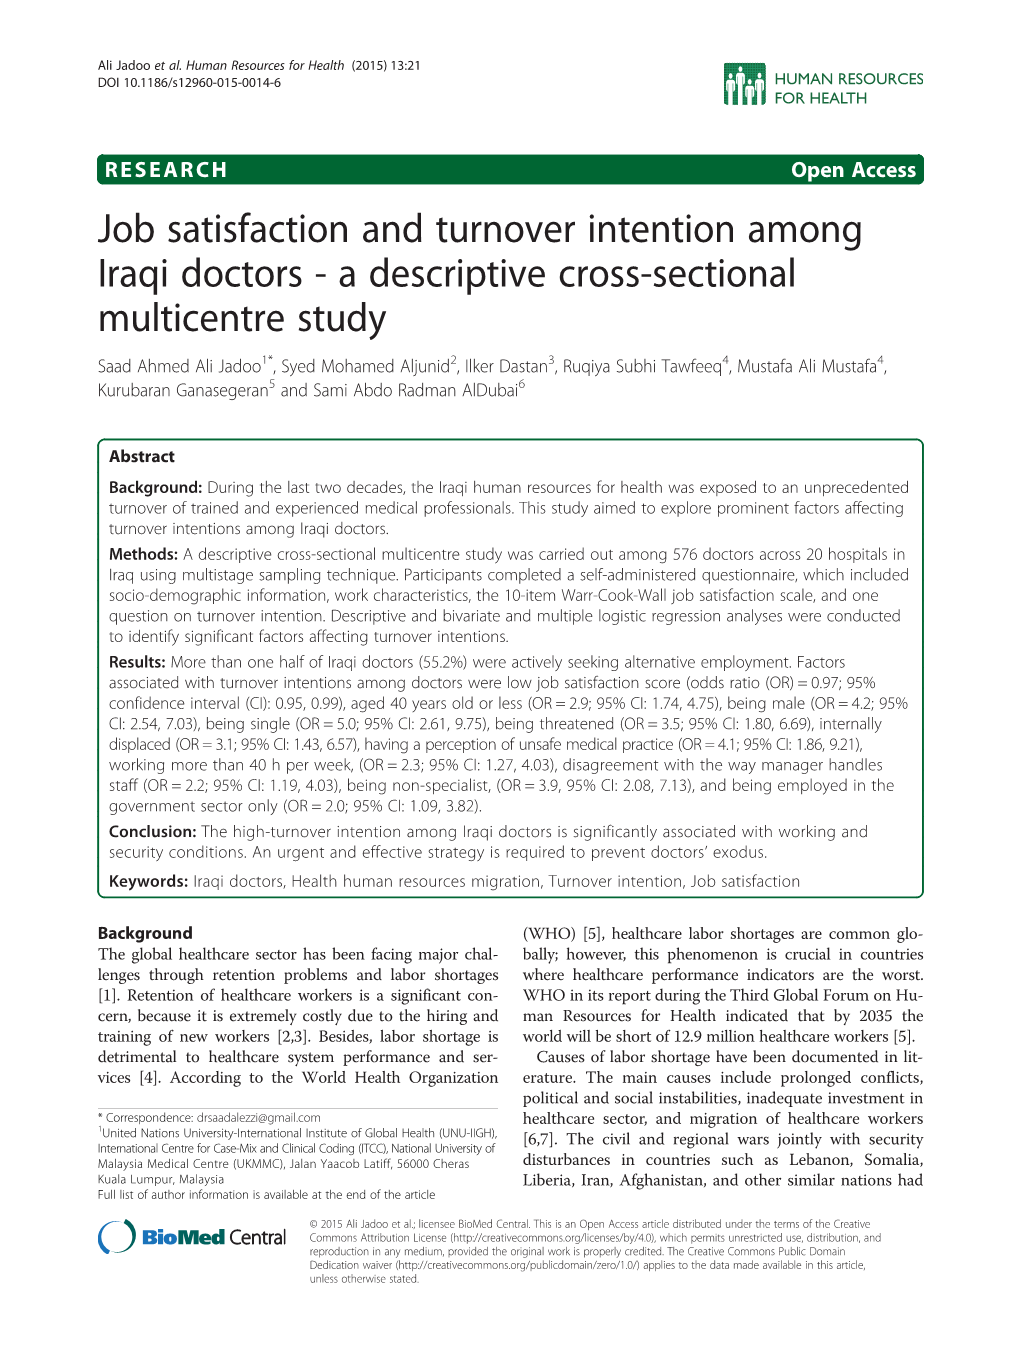 Job Satisfaction and Turnover Intention Among Iraqi Doctors